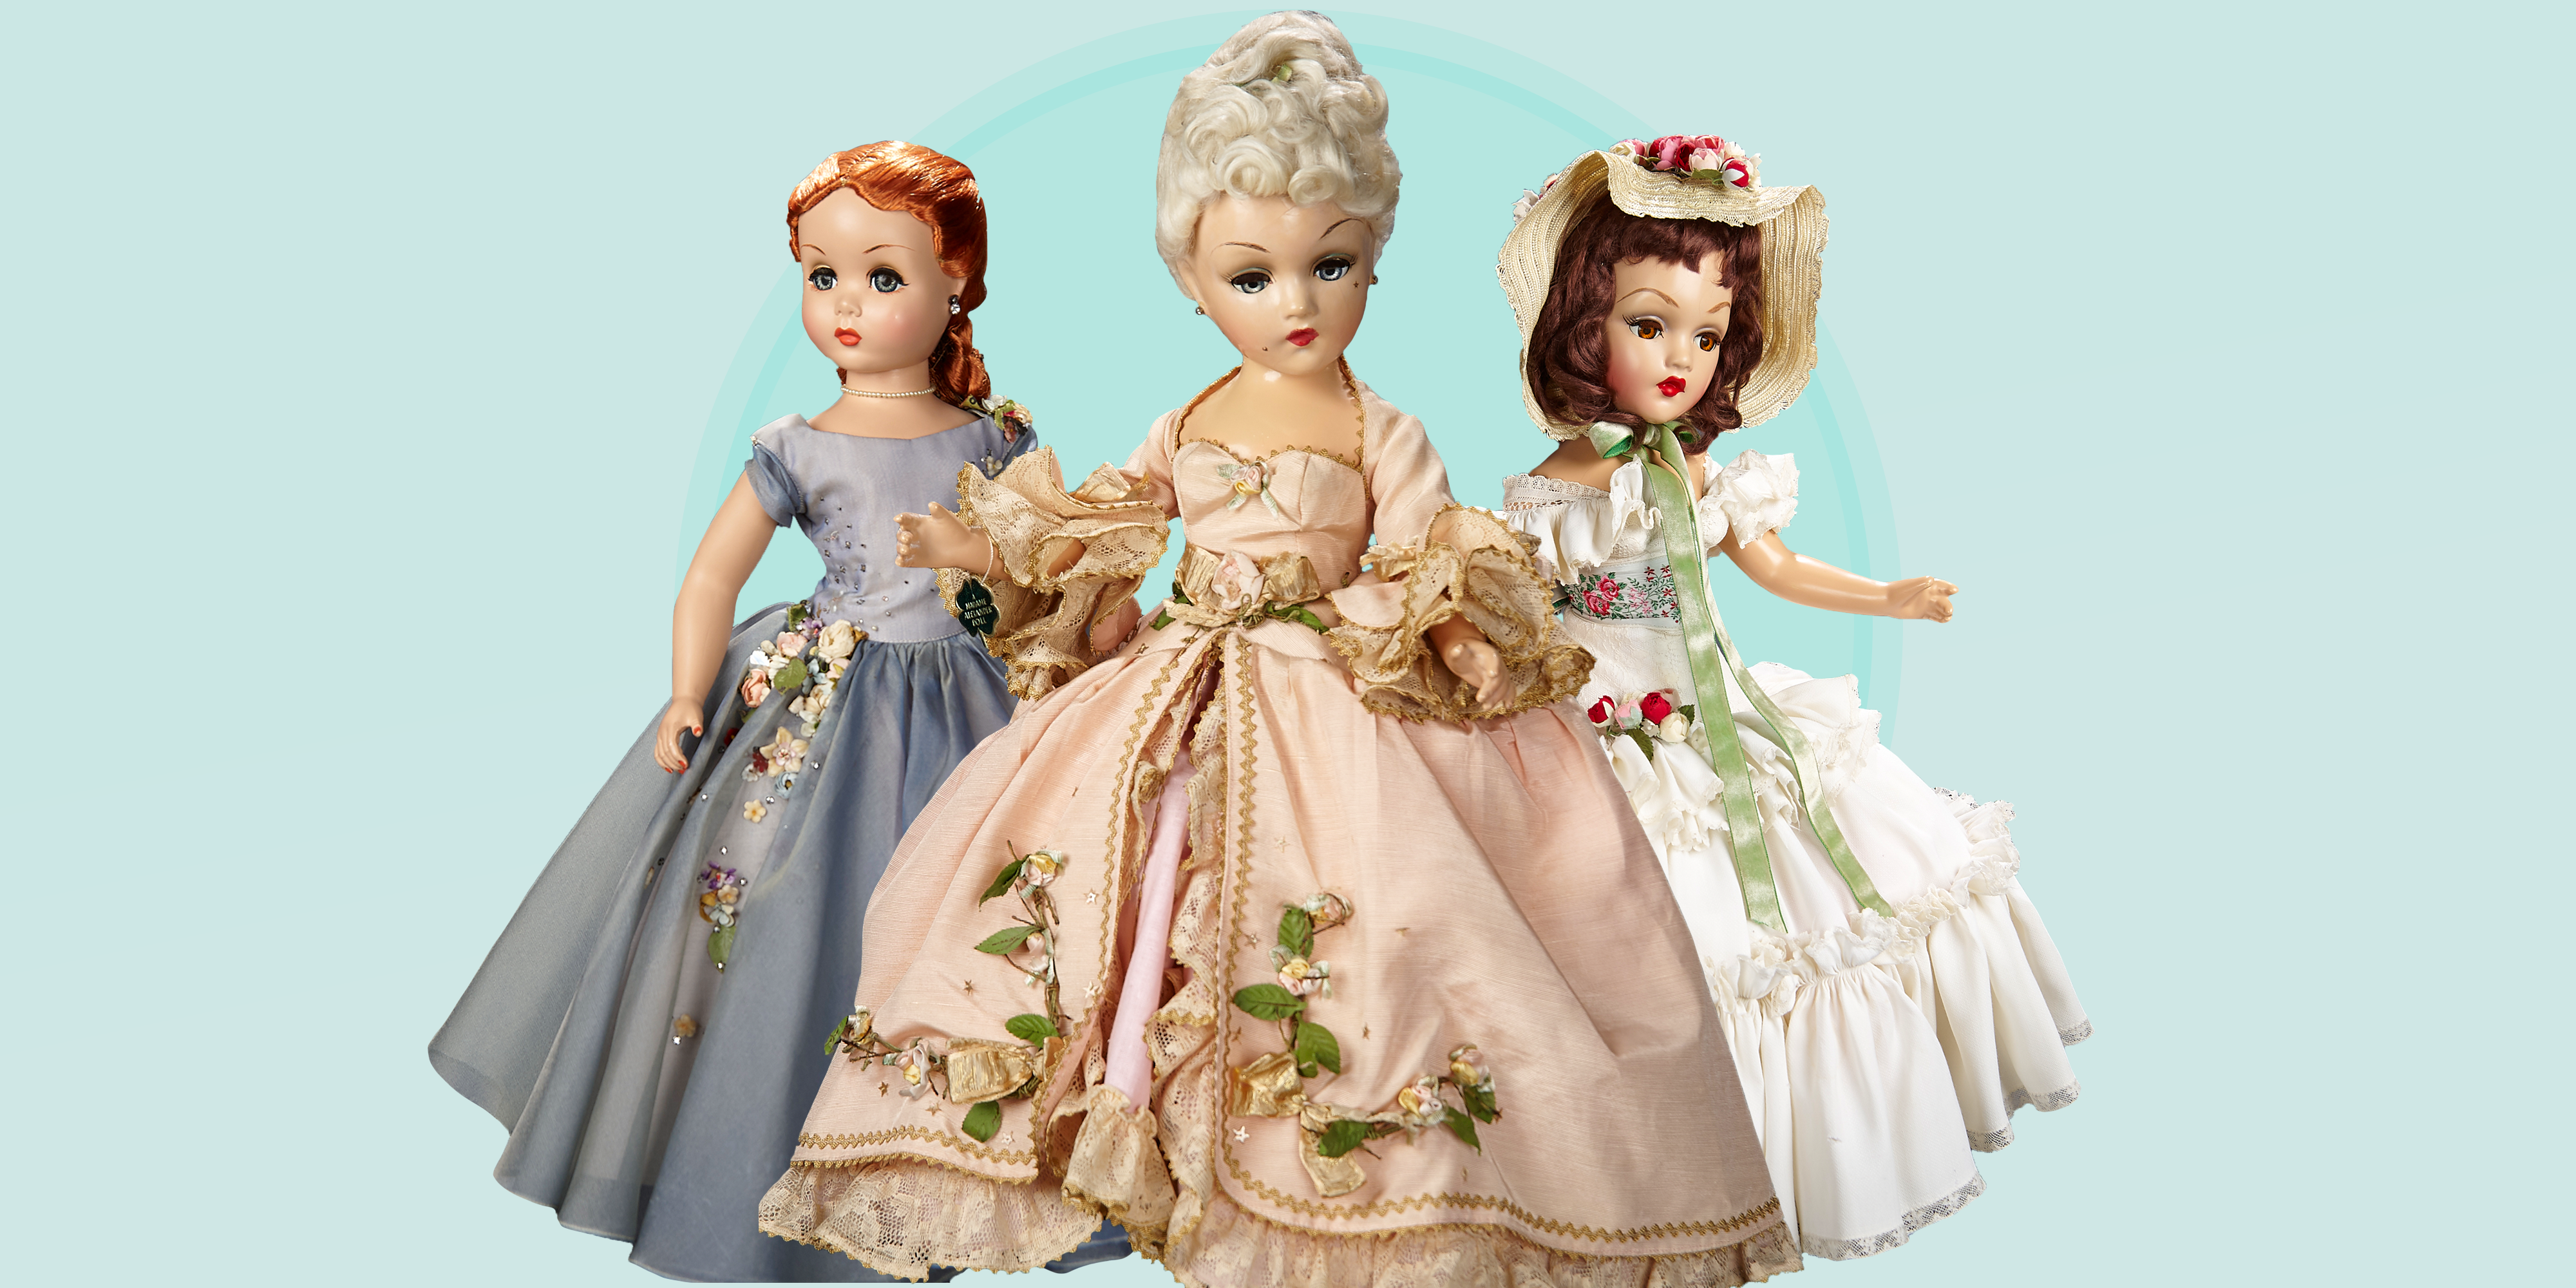 QUEEN ELIZABETH II Paper Doll Book 4 Dolls & 8 Decades of Royal Fashions! 